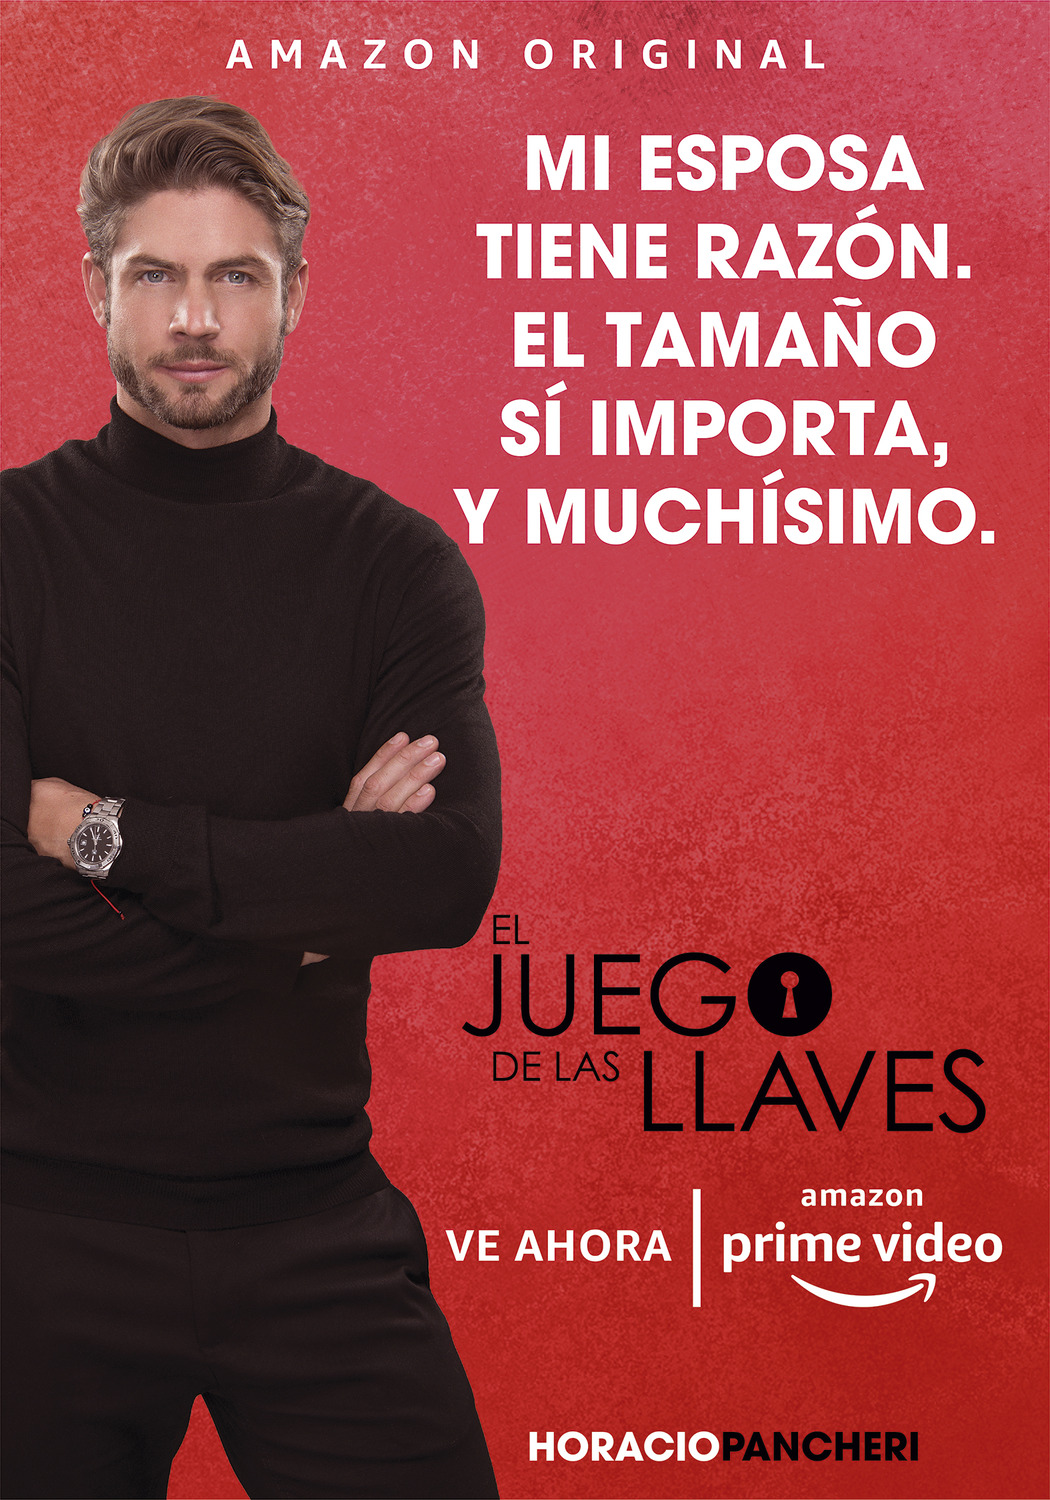 Extra Large TV Poster Image for El Juego de las Llaves (#8 of 21)